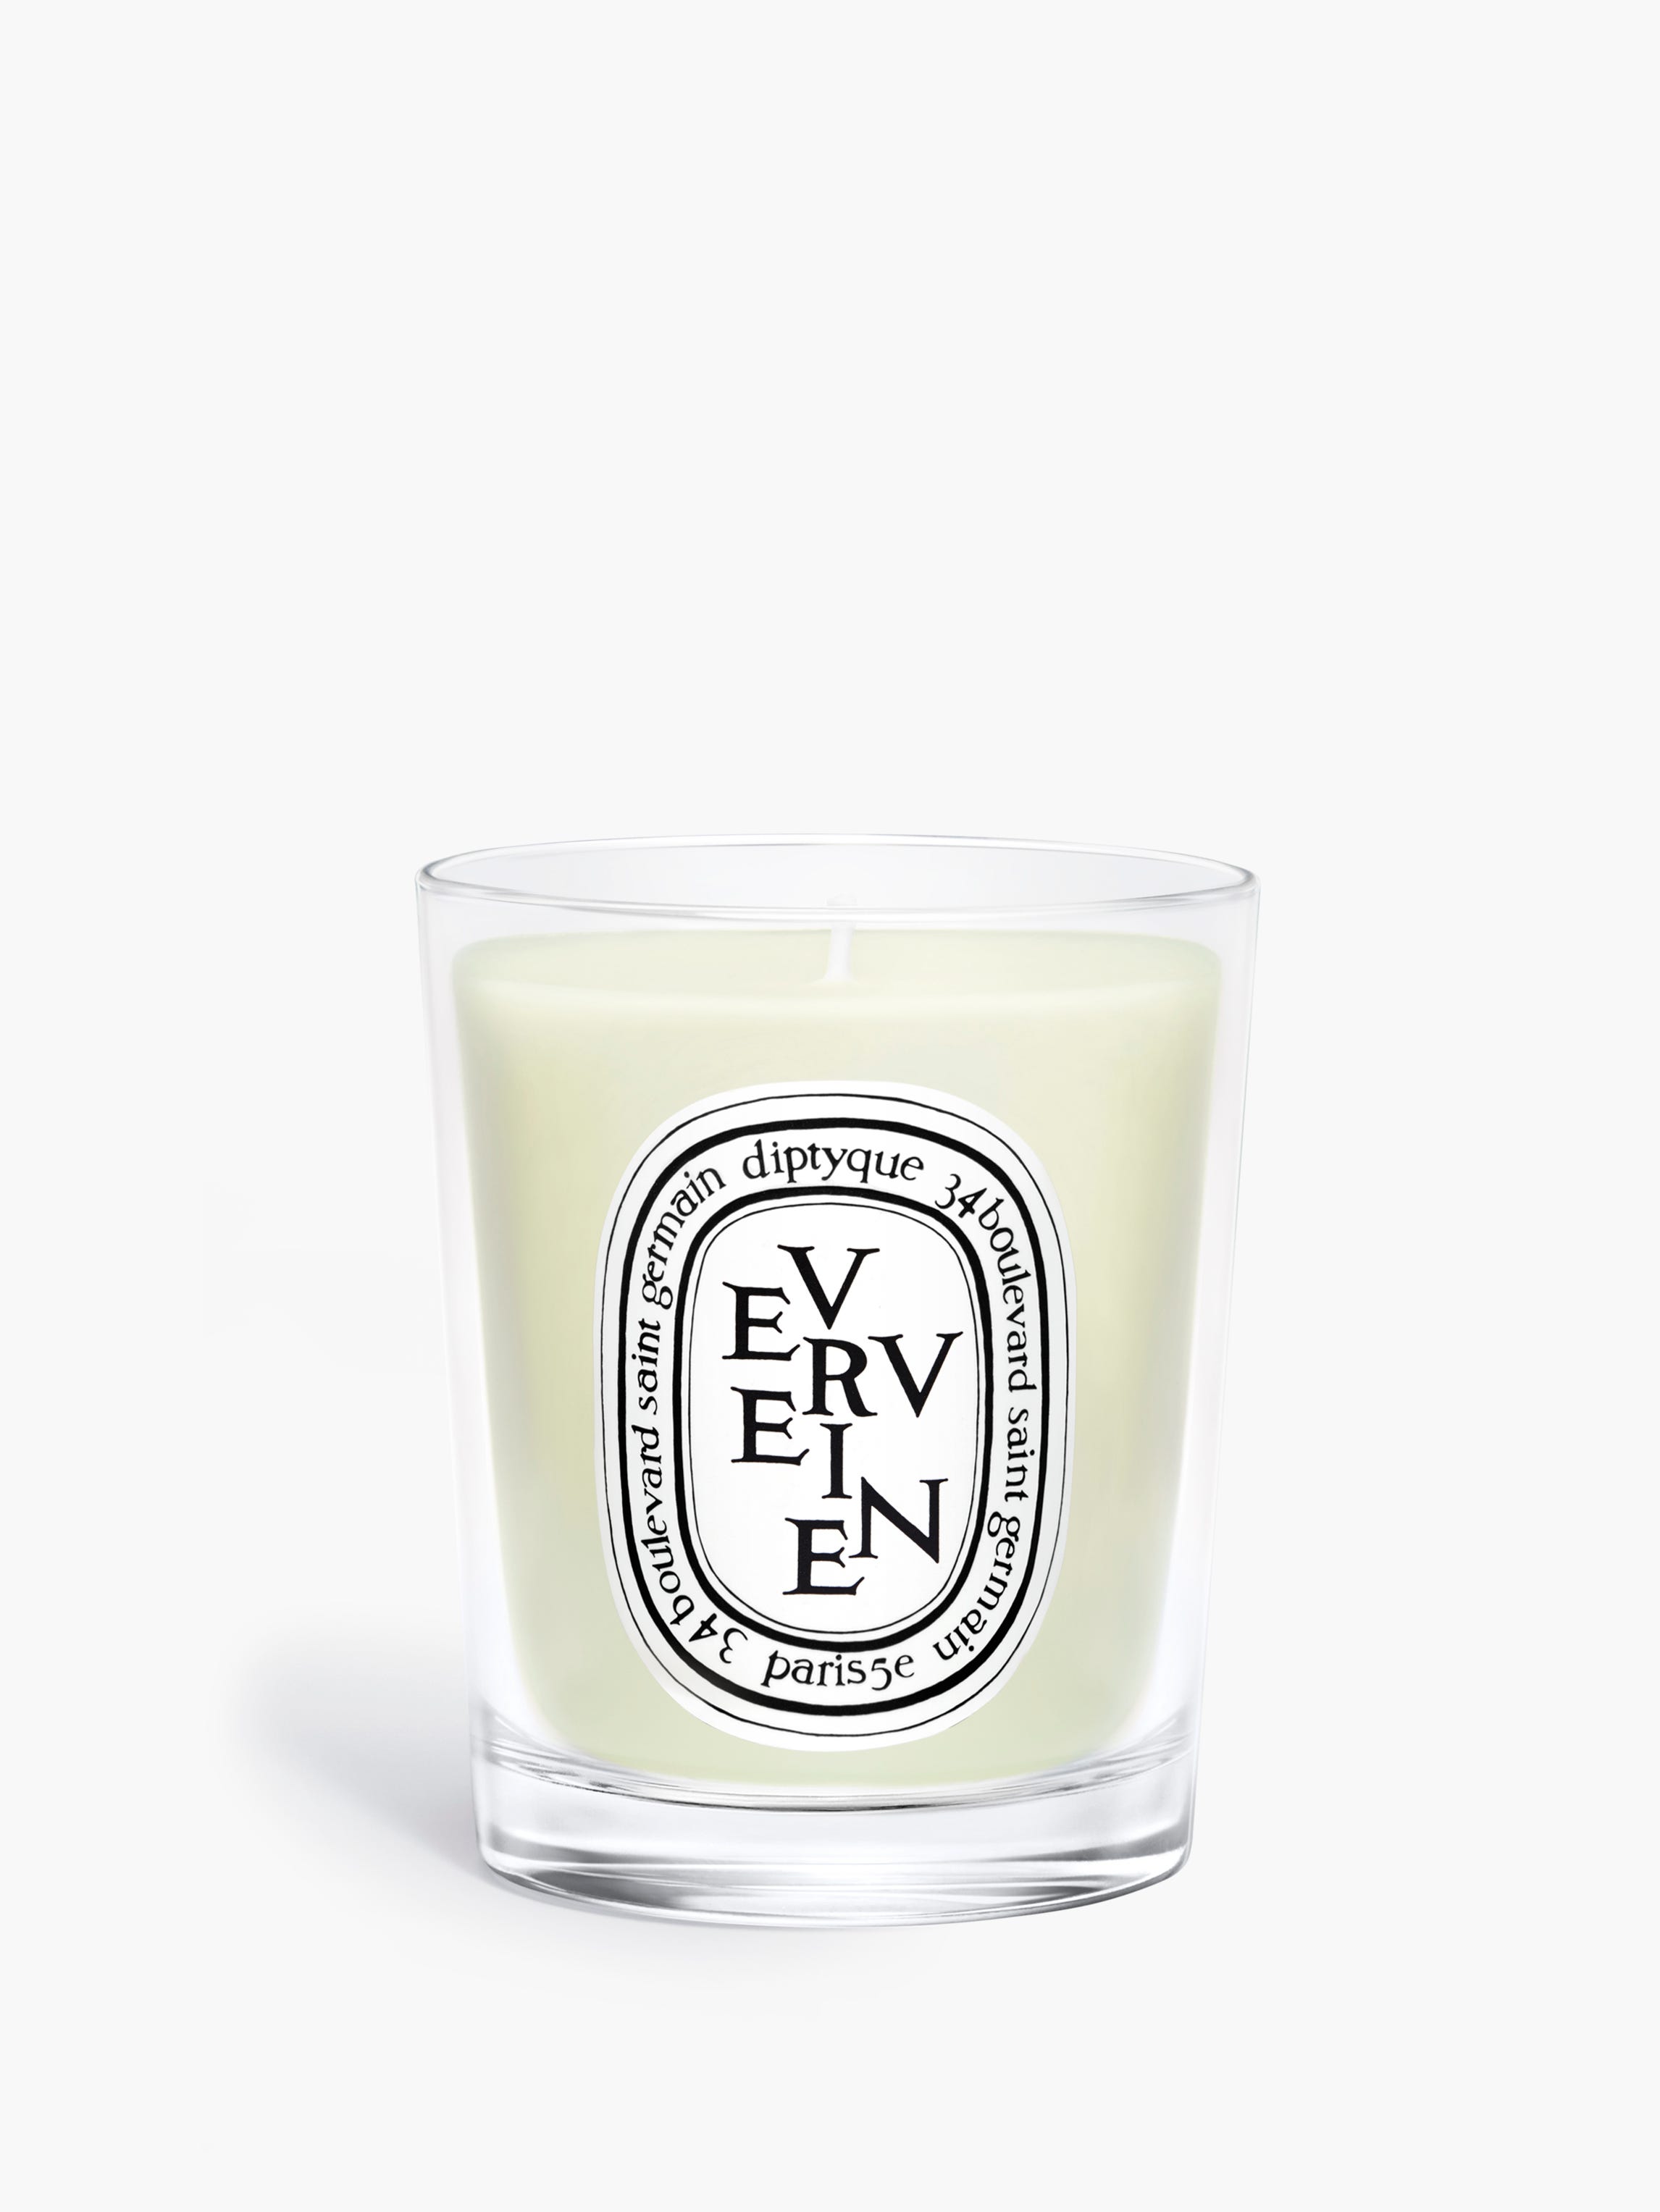 Verveine (Lemon Verbena) - Classic Candle Classic | Diptyque Paris